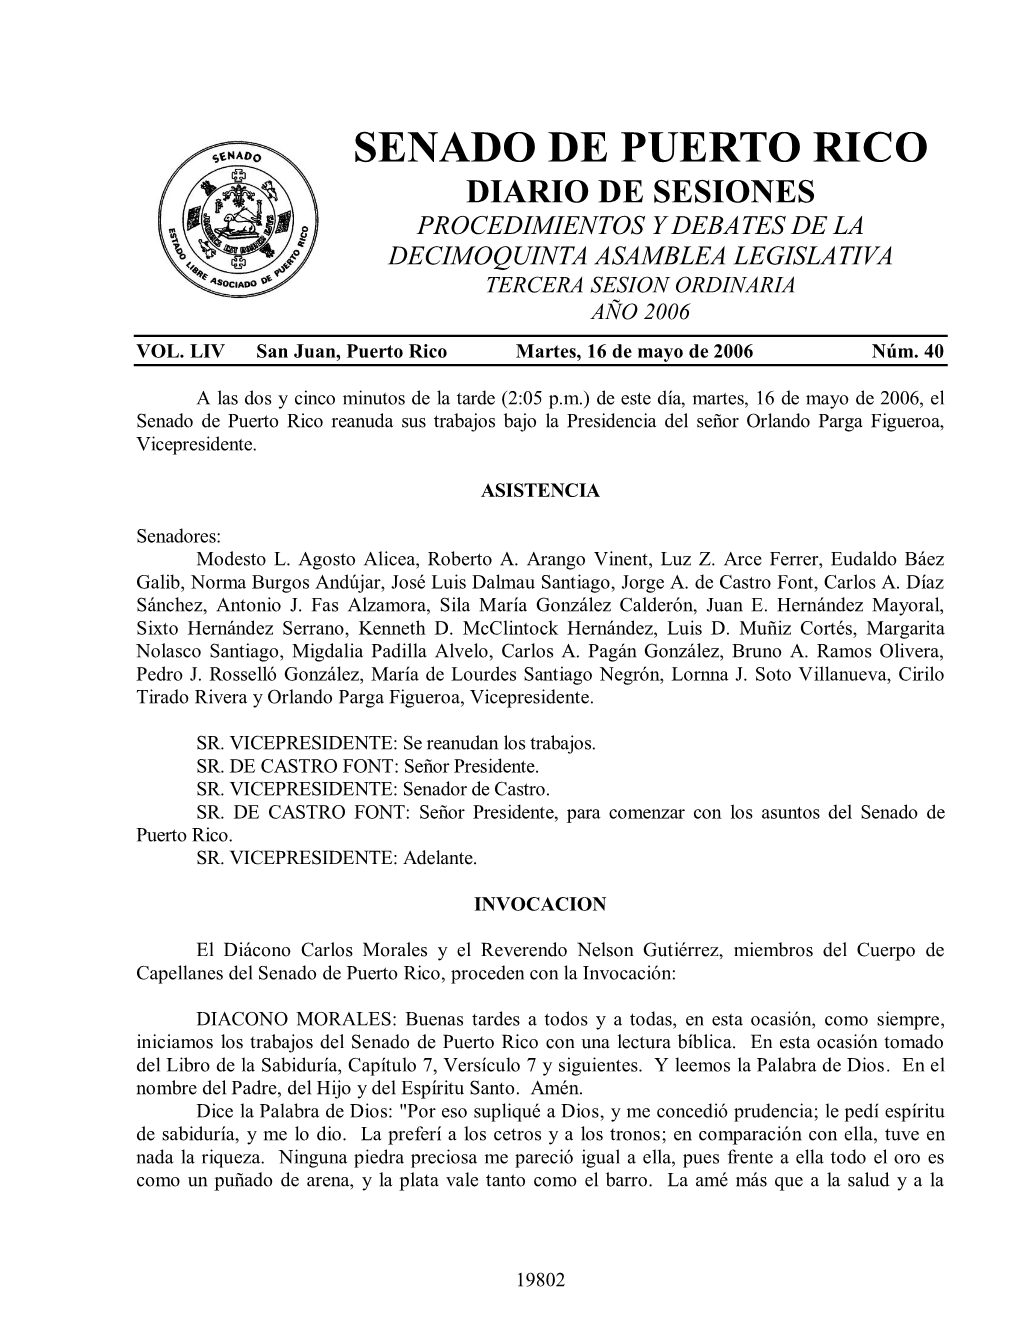 Senado De Puerto Rico Diario De Sesiones Procedimientos Y Debates De La Decimoquinta Asamblea Legislativa Tercera Sesion Ordinaria Año 2006 Vol